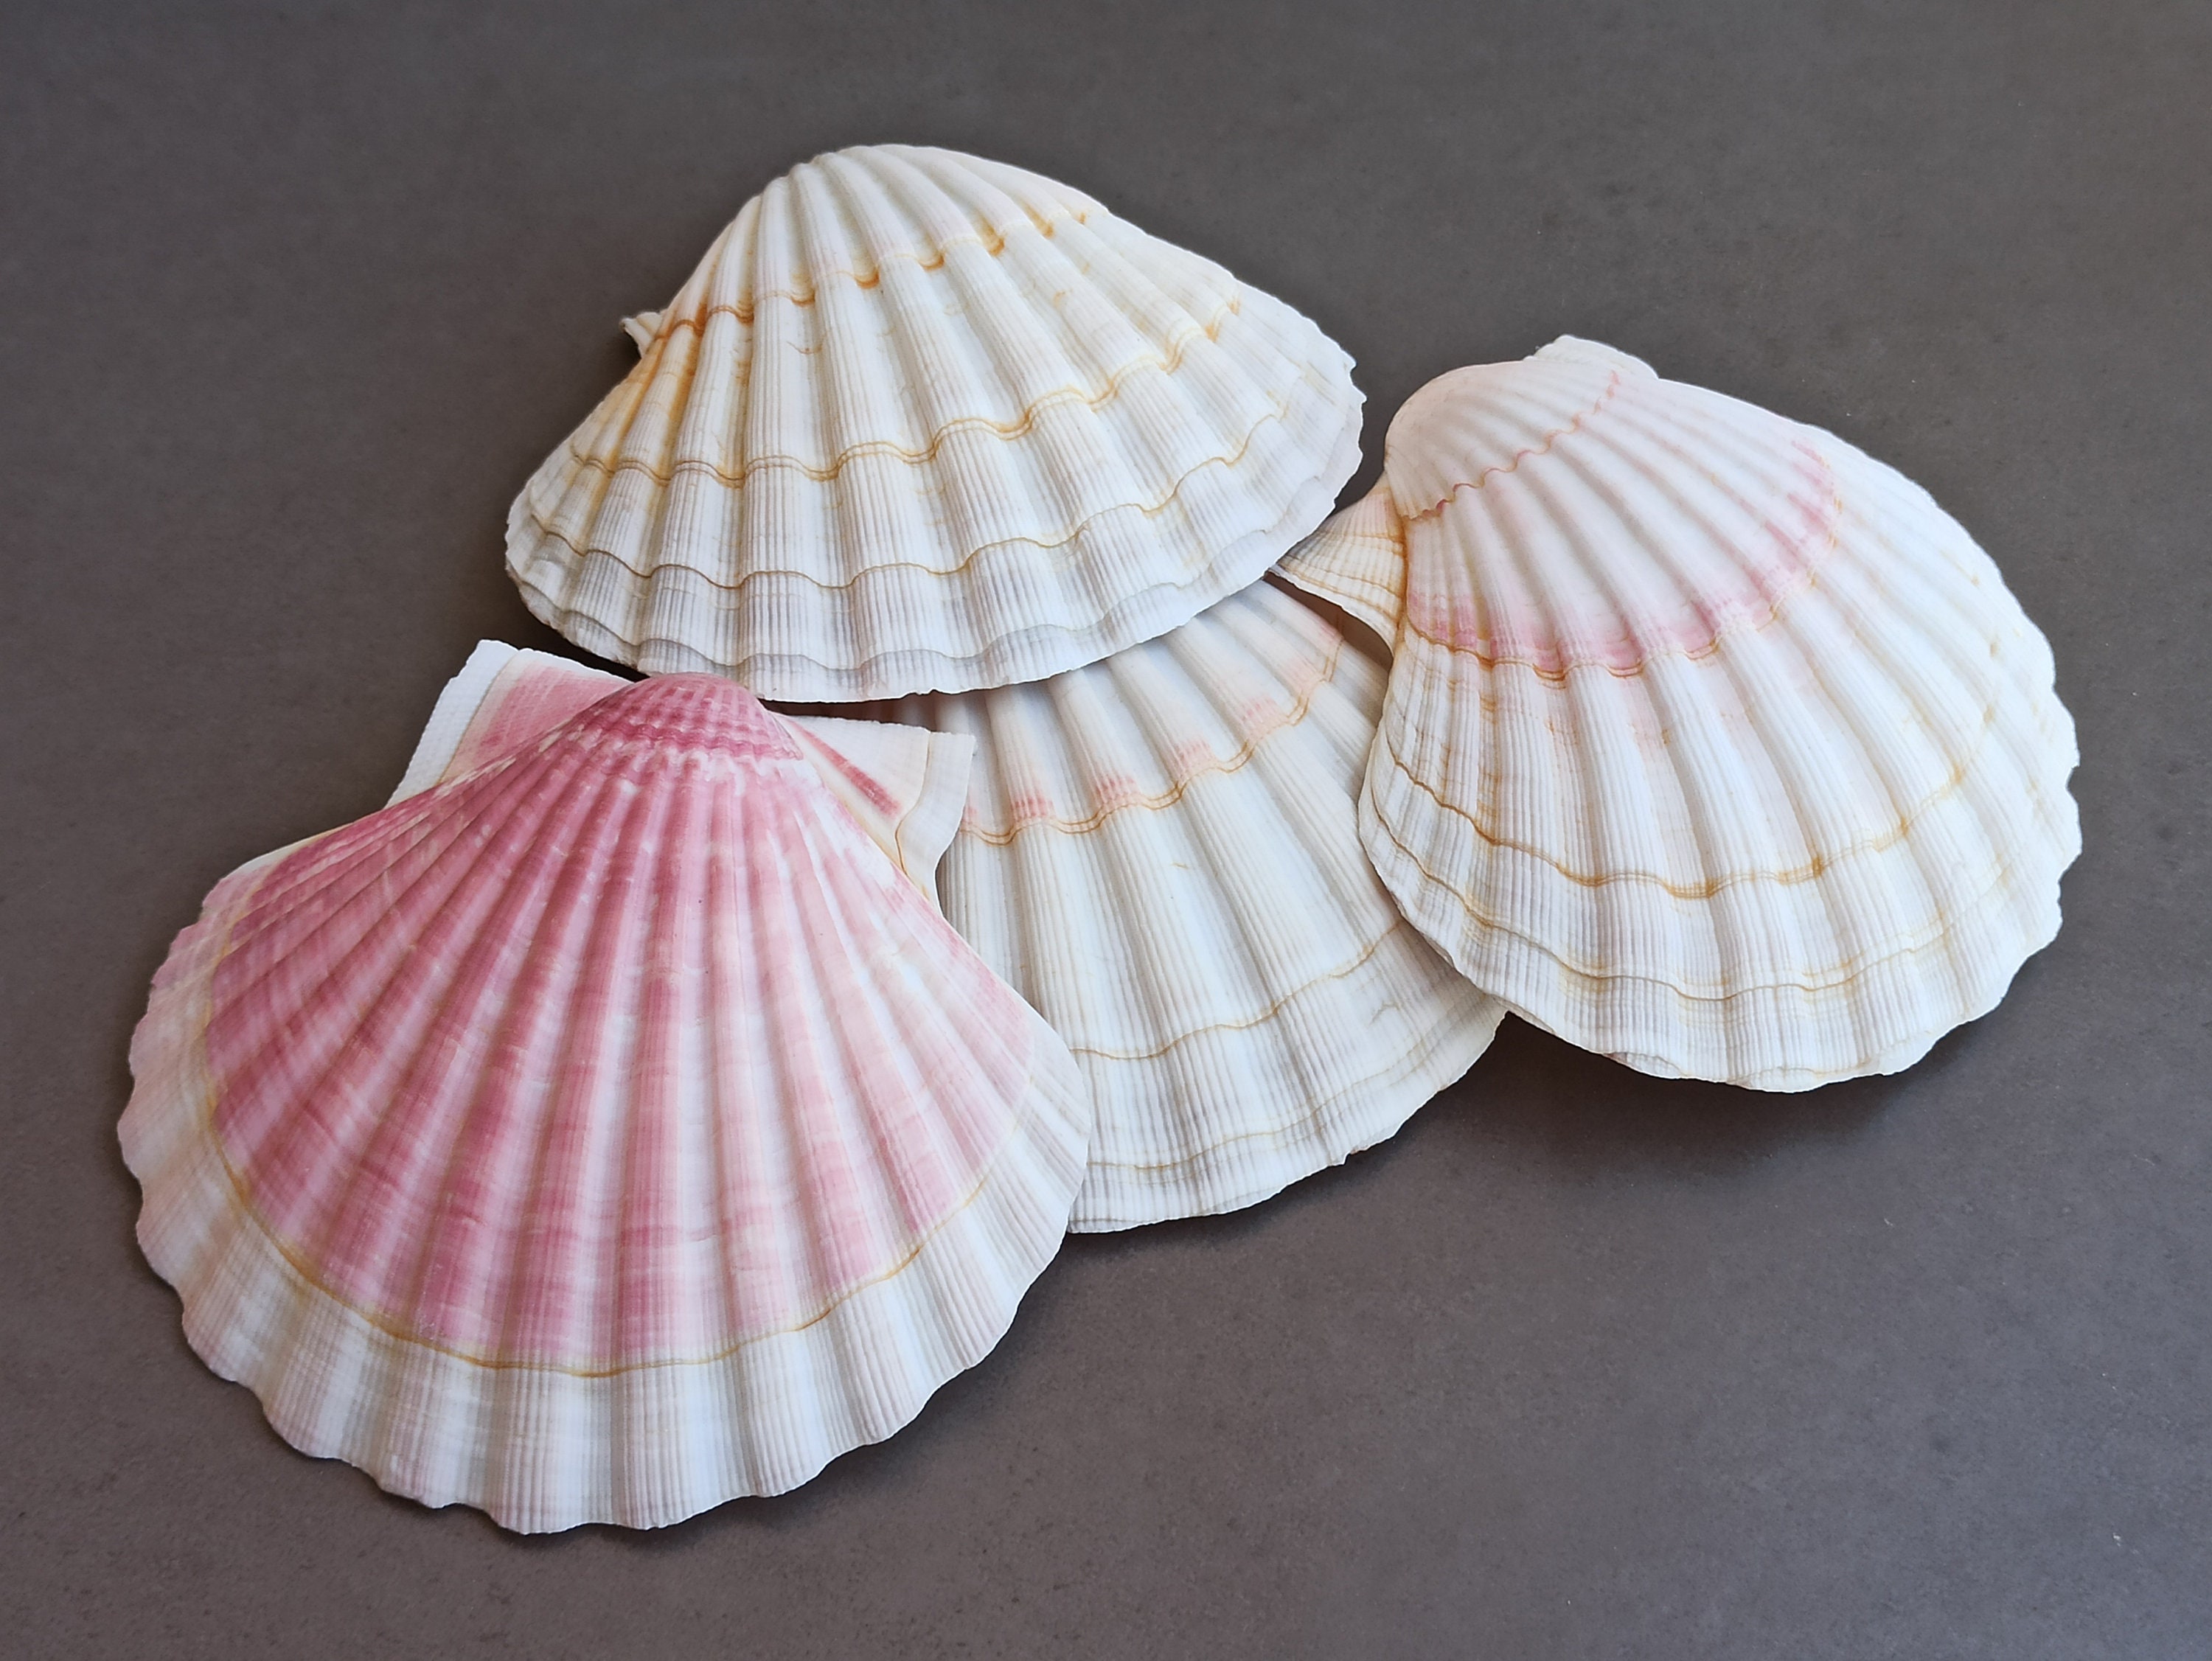 50 Small Natural Spiral Seashell, Spiral Sea Shell Bead, Bulk